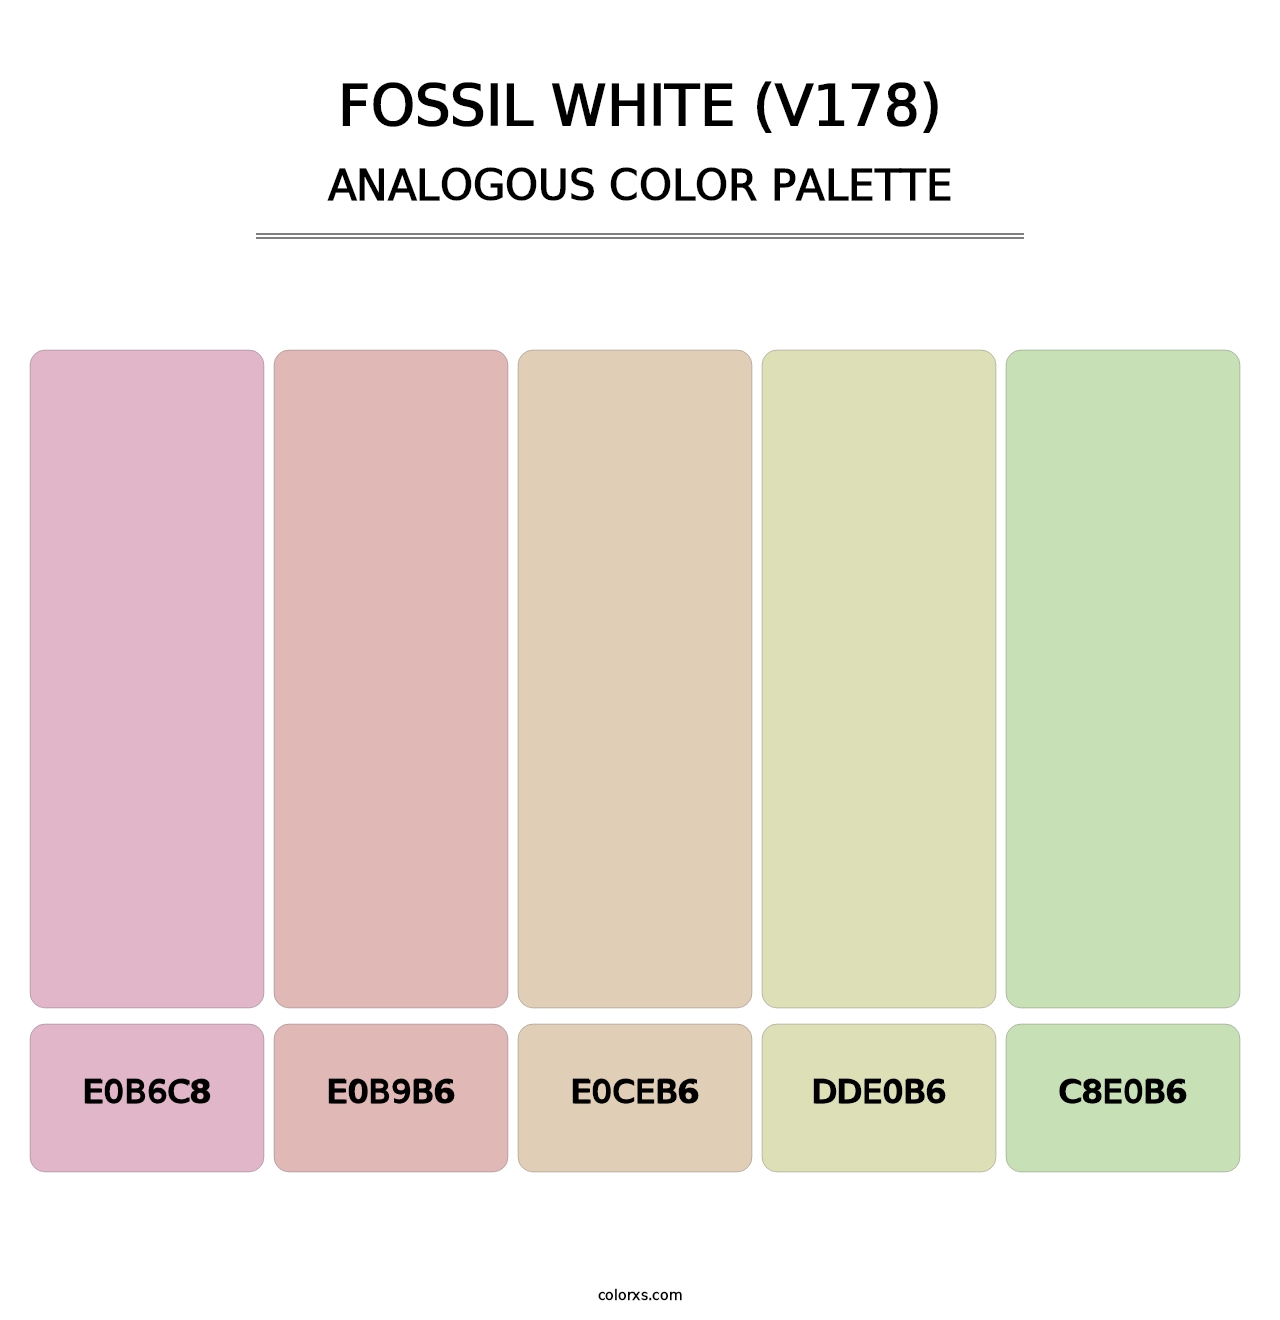 Fossil White (V178) - Analogous Color Palette